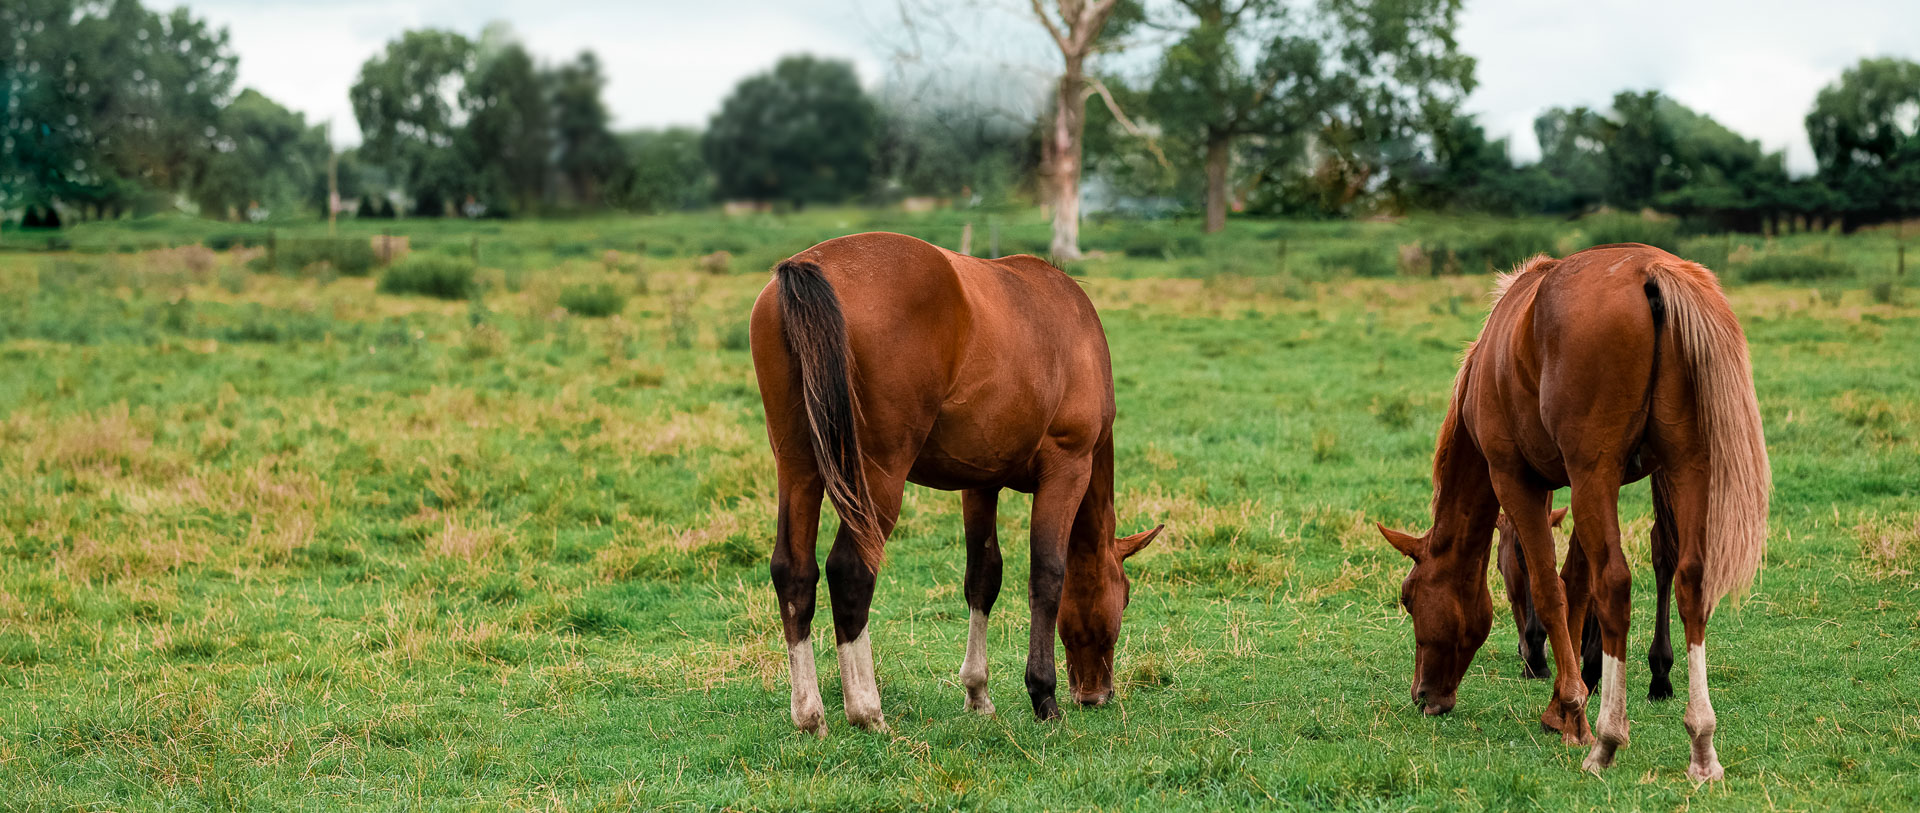 starzup bienveillance association donations don écologique bien-être cheval equitation